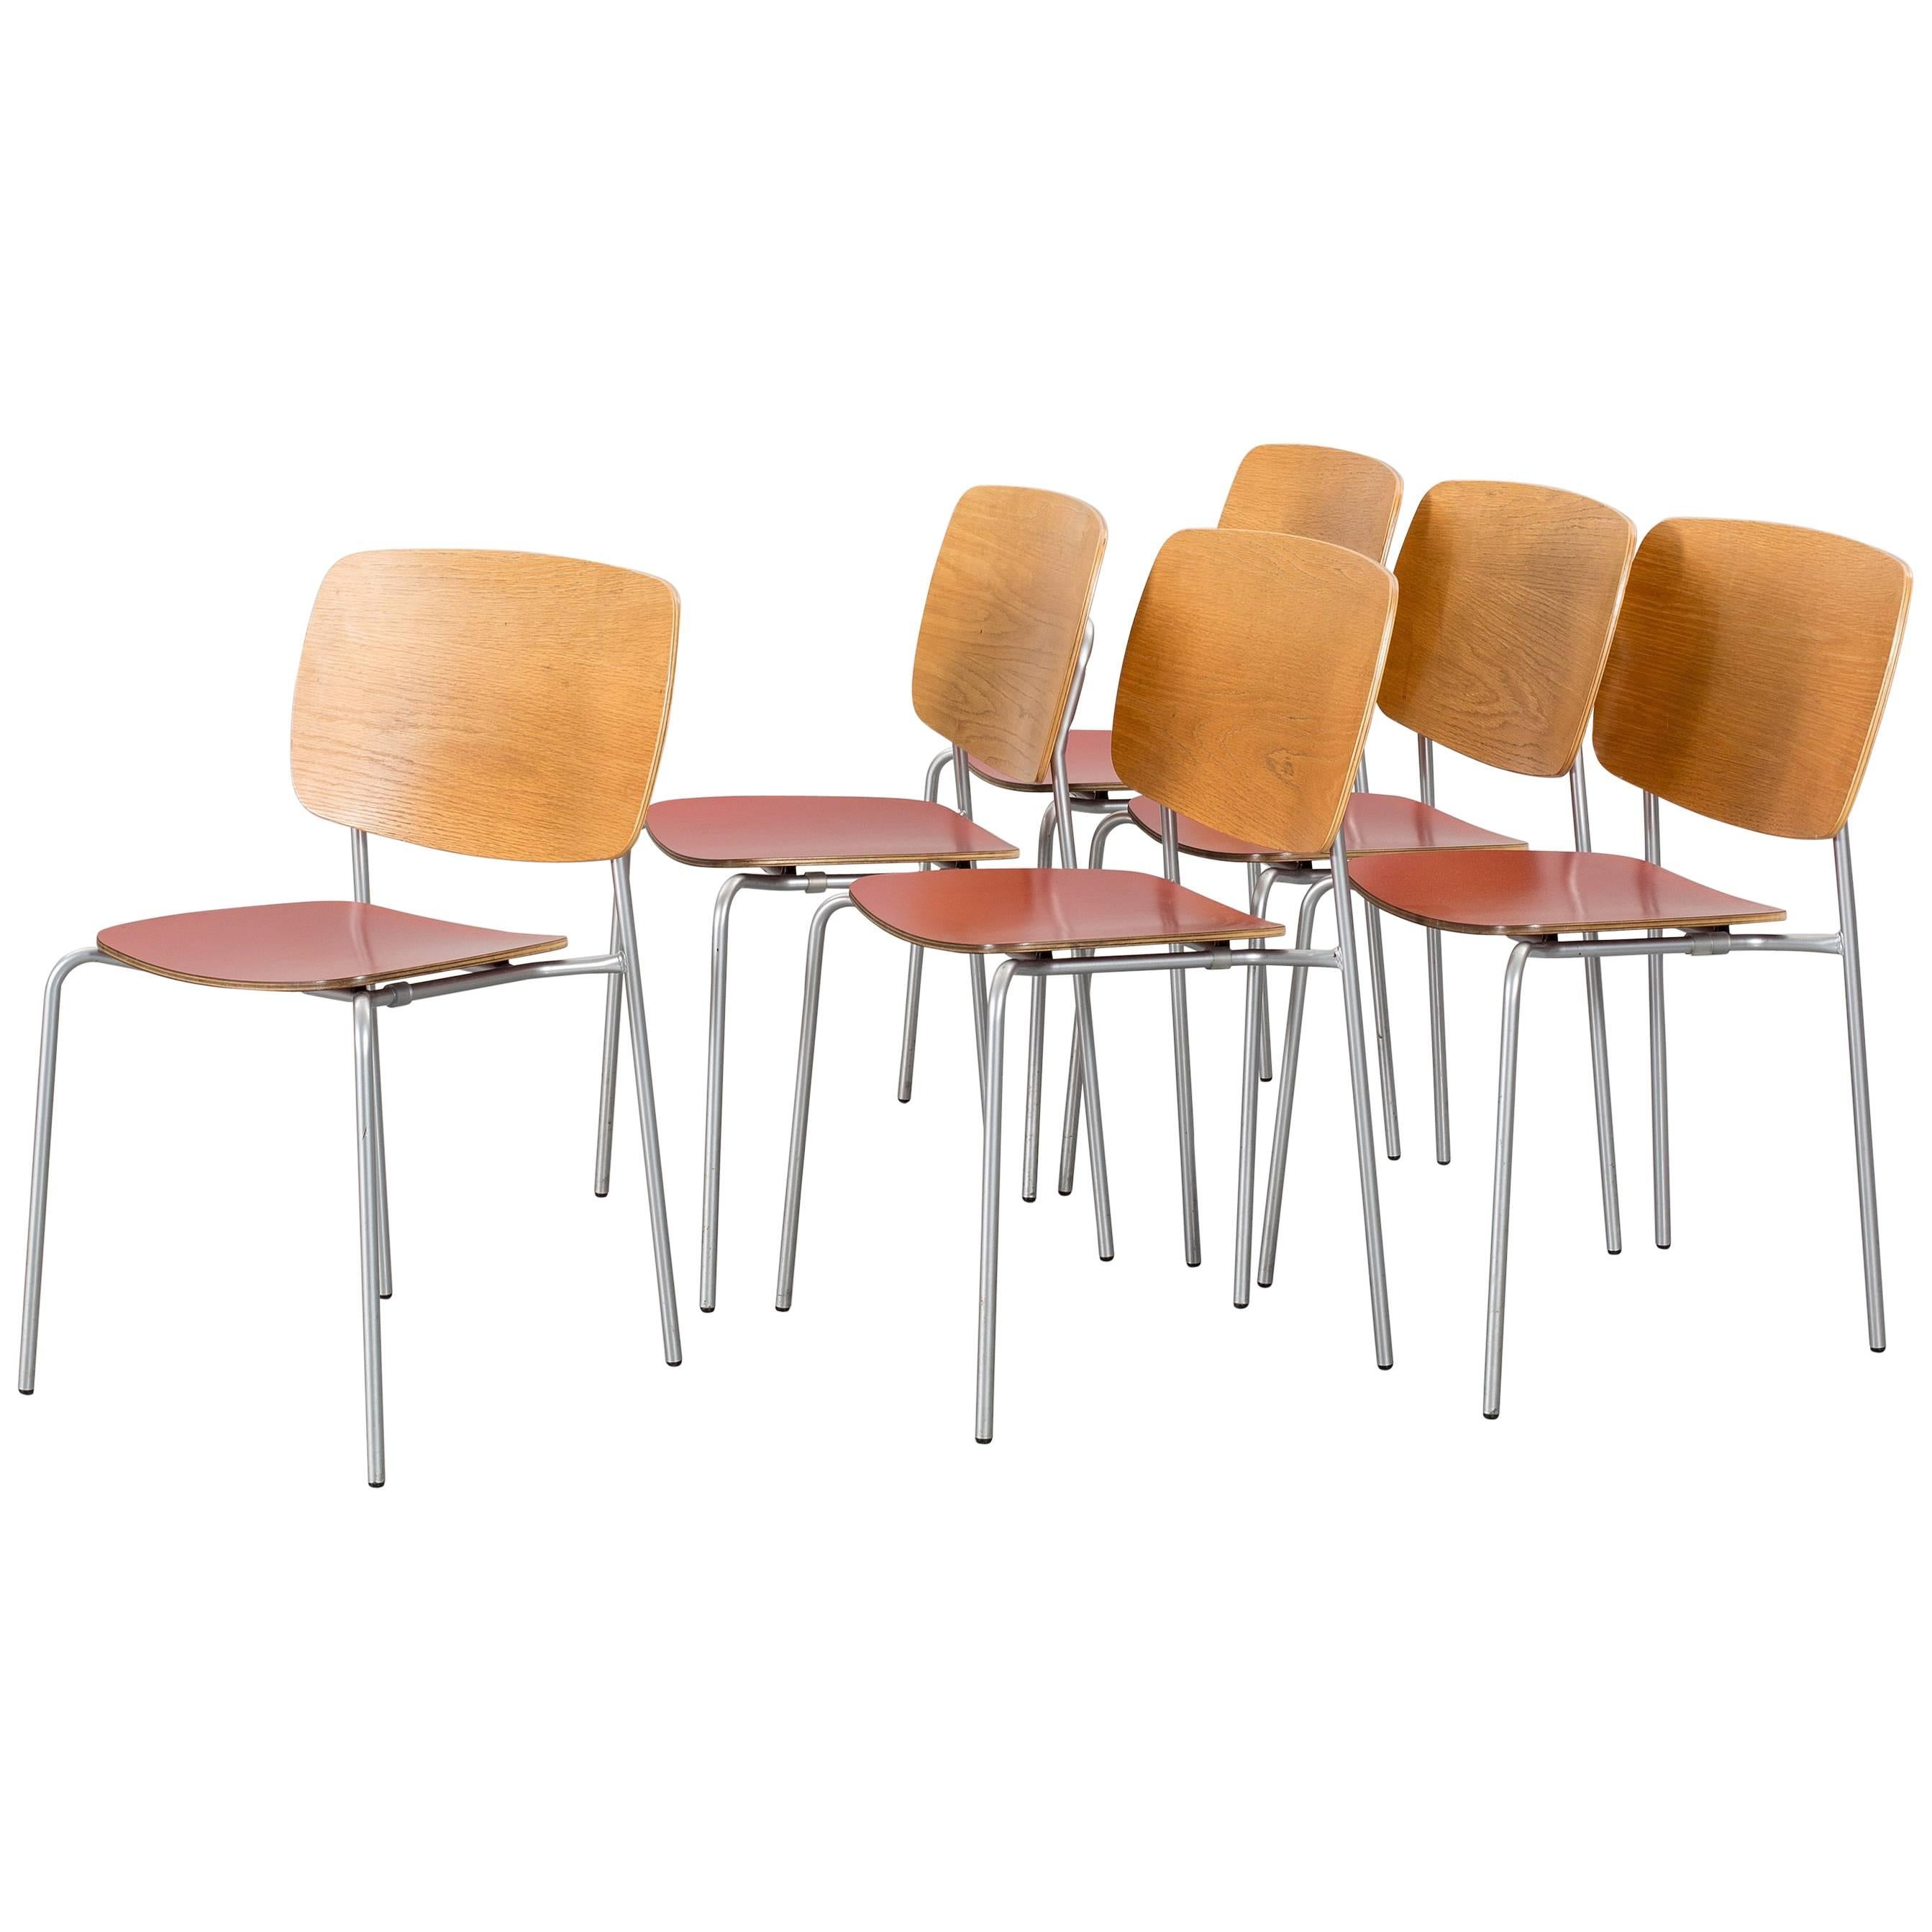 Set of Six Scandinavian Modern Chairs by Jonas Lindvall for Skandiform